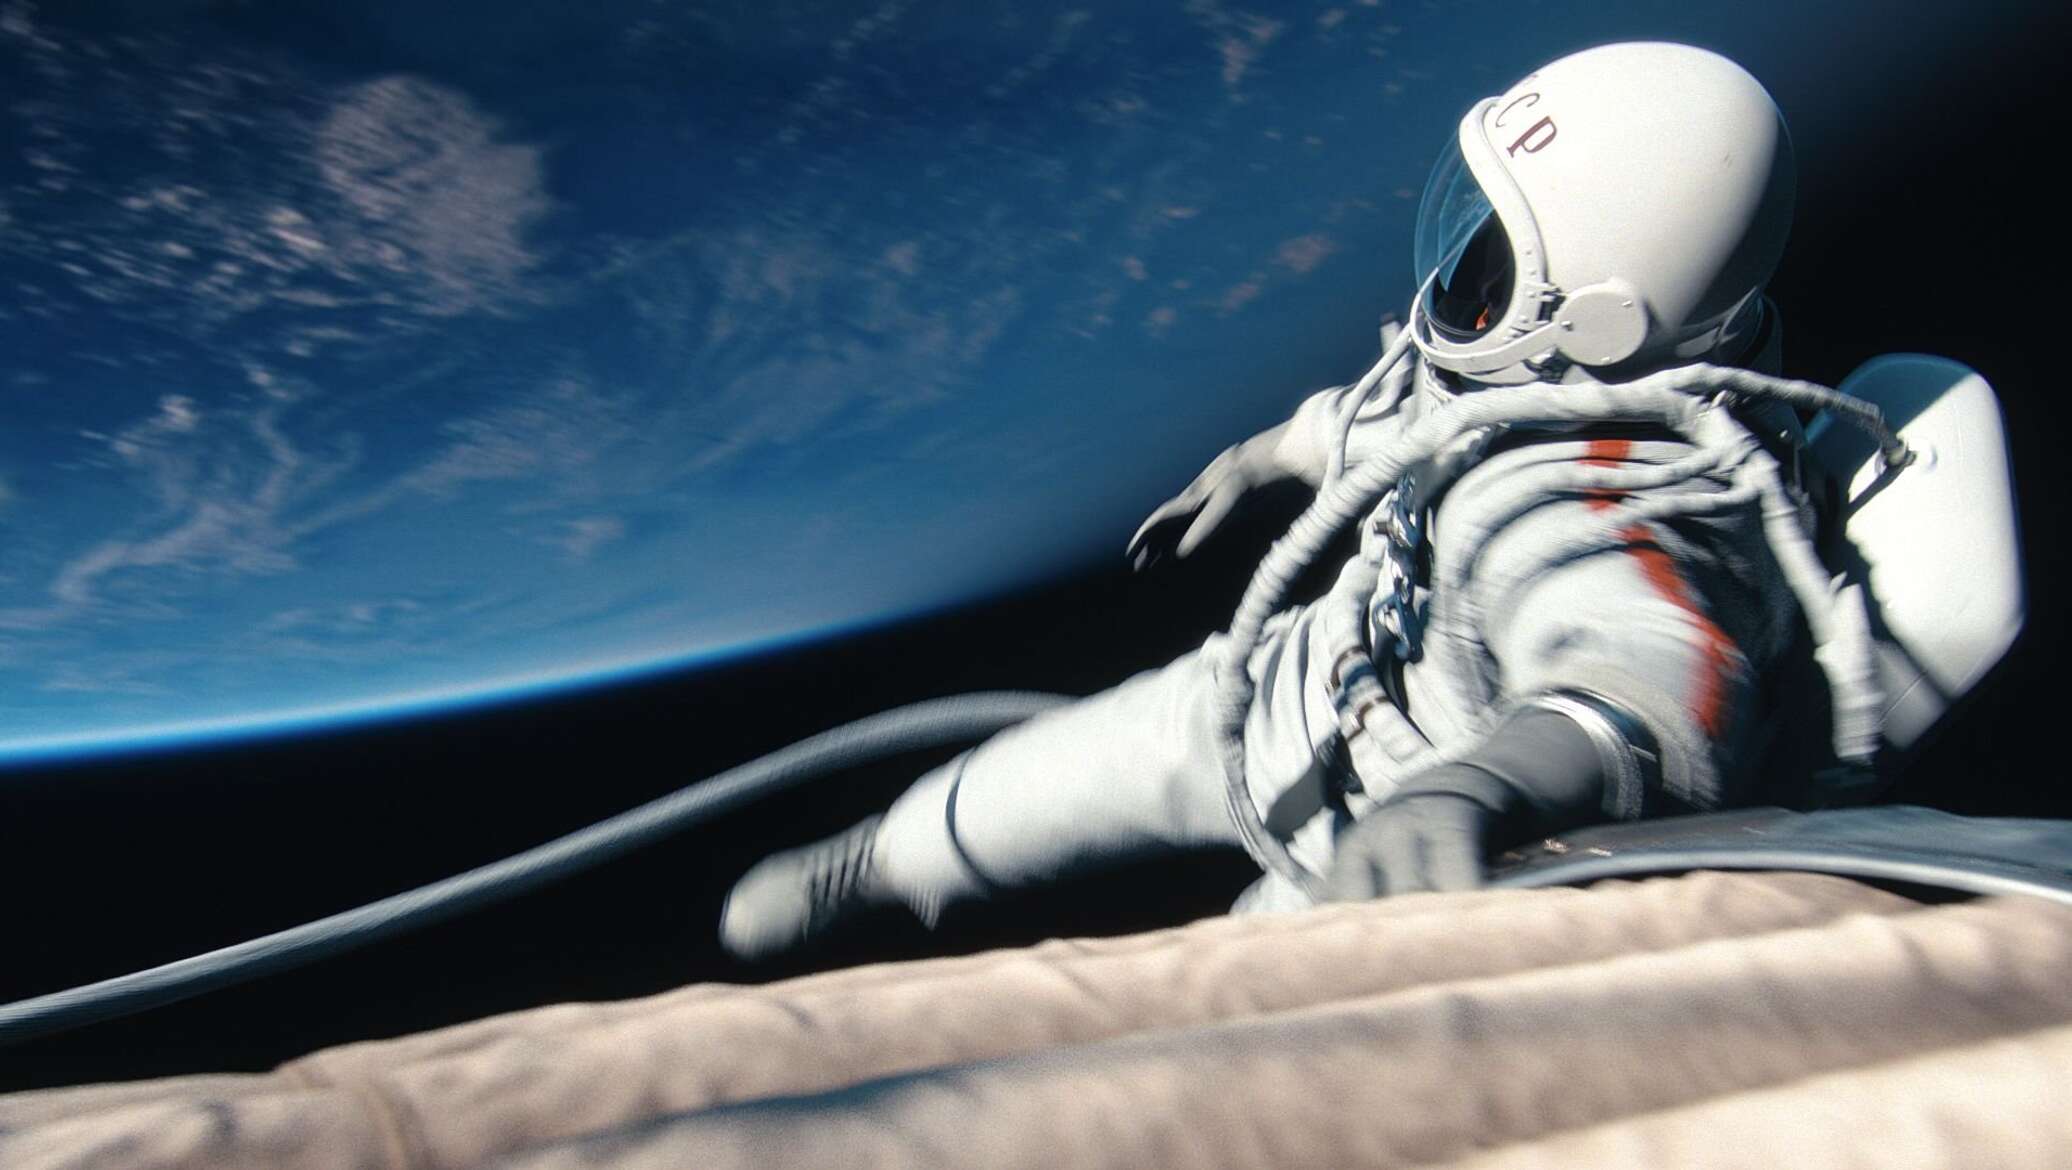 Картинка время первых. Космонавт в открытом космосе.